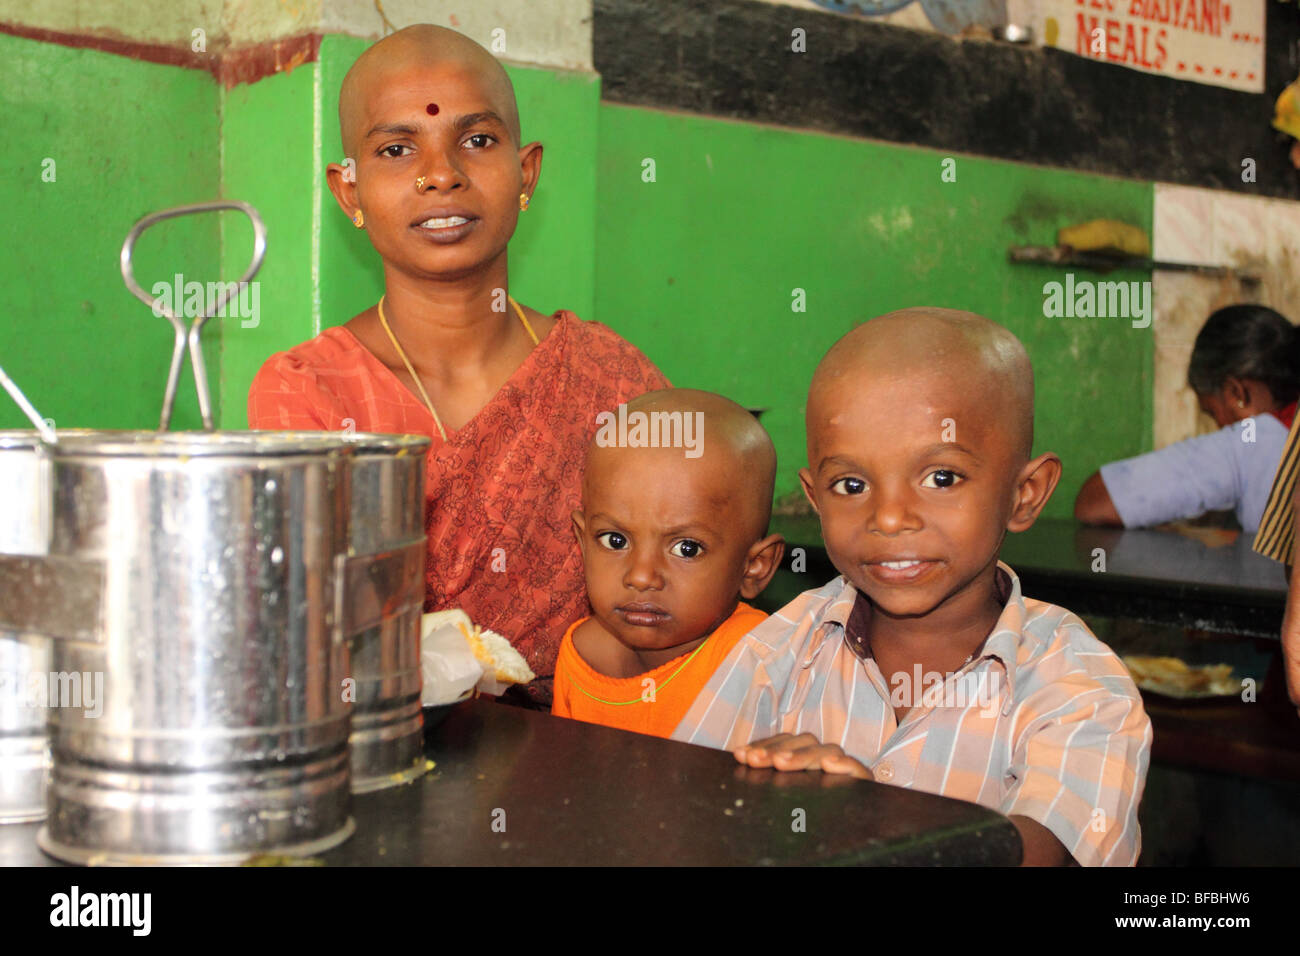 Madre e figli in attesa a Tirupati alla stazione degli autobus, dopo aver visitato il tempio Tirumala per offrire i loro capelli agli dèi. Foto Stock